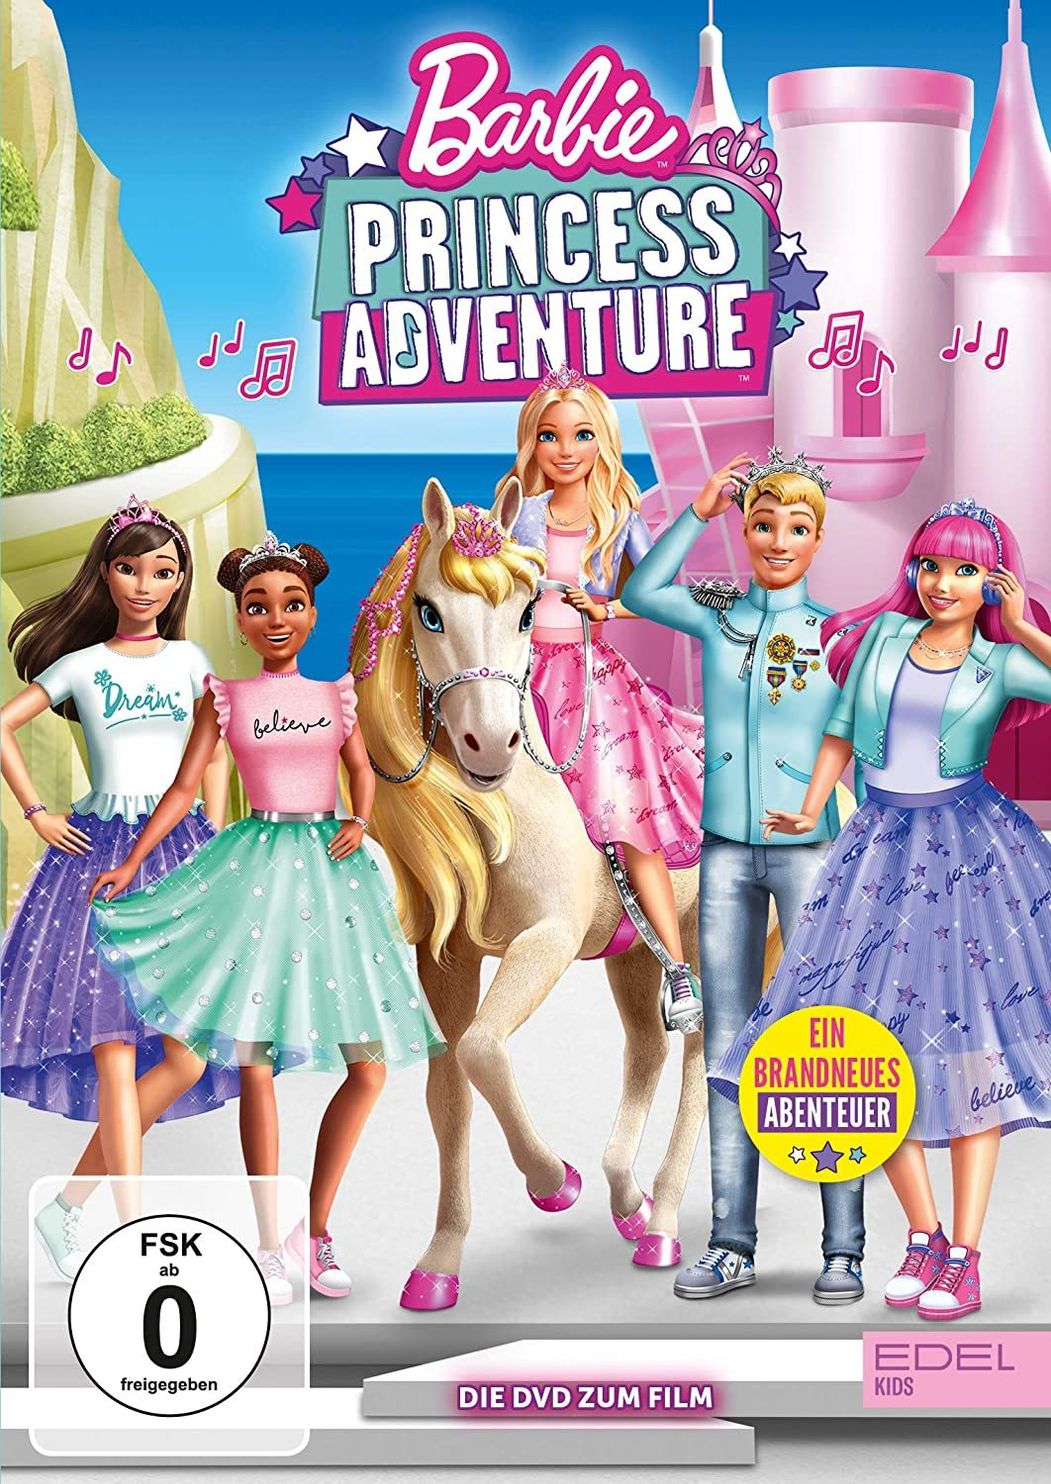 Barbie Princess Adventure kaufen | tausendkind.at